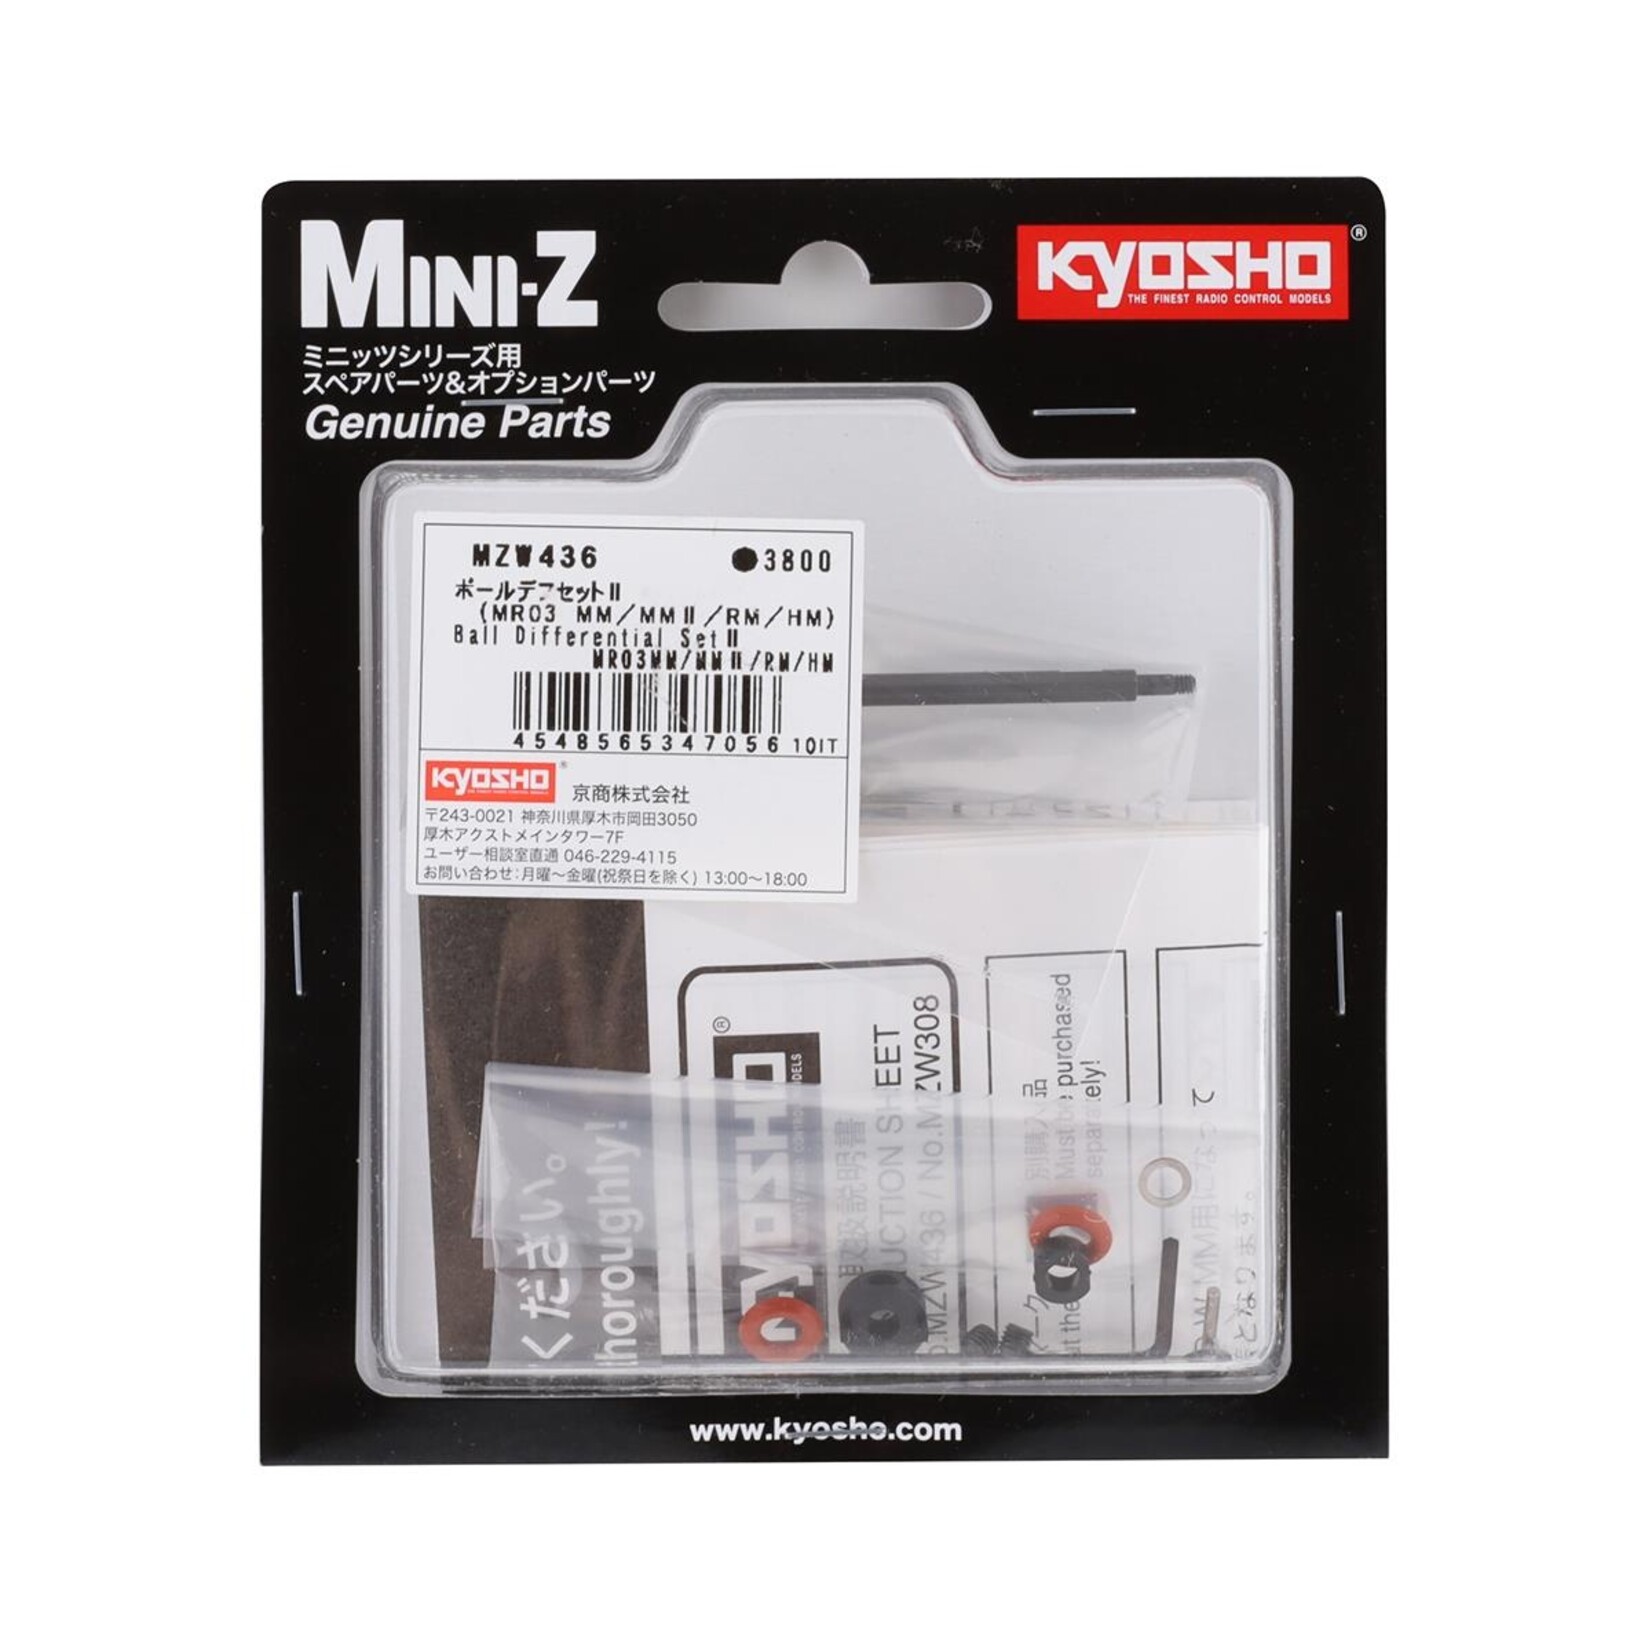 Kyosho Kyosho Mini-Z MR-03 Ball Differential Set II (MM/MMII/RM/HM) #MZW436